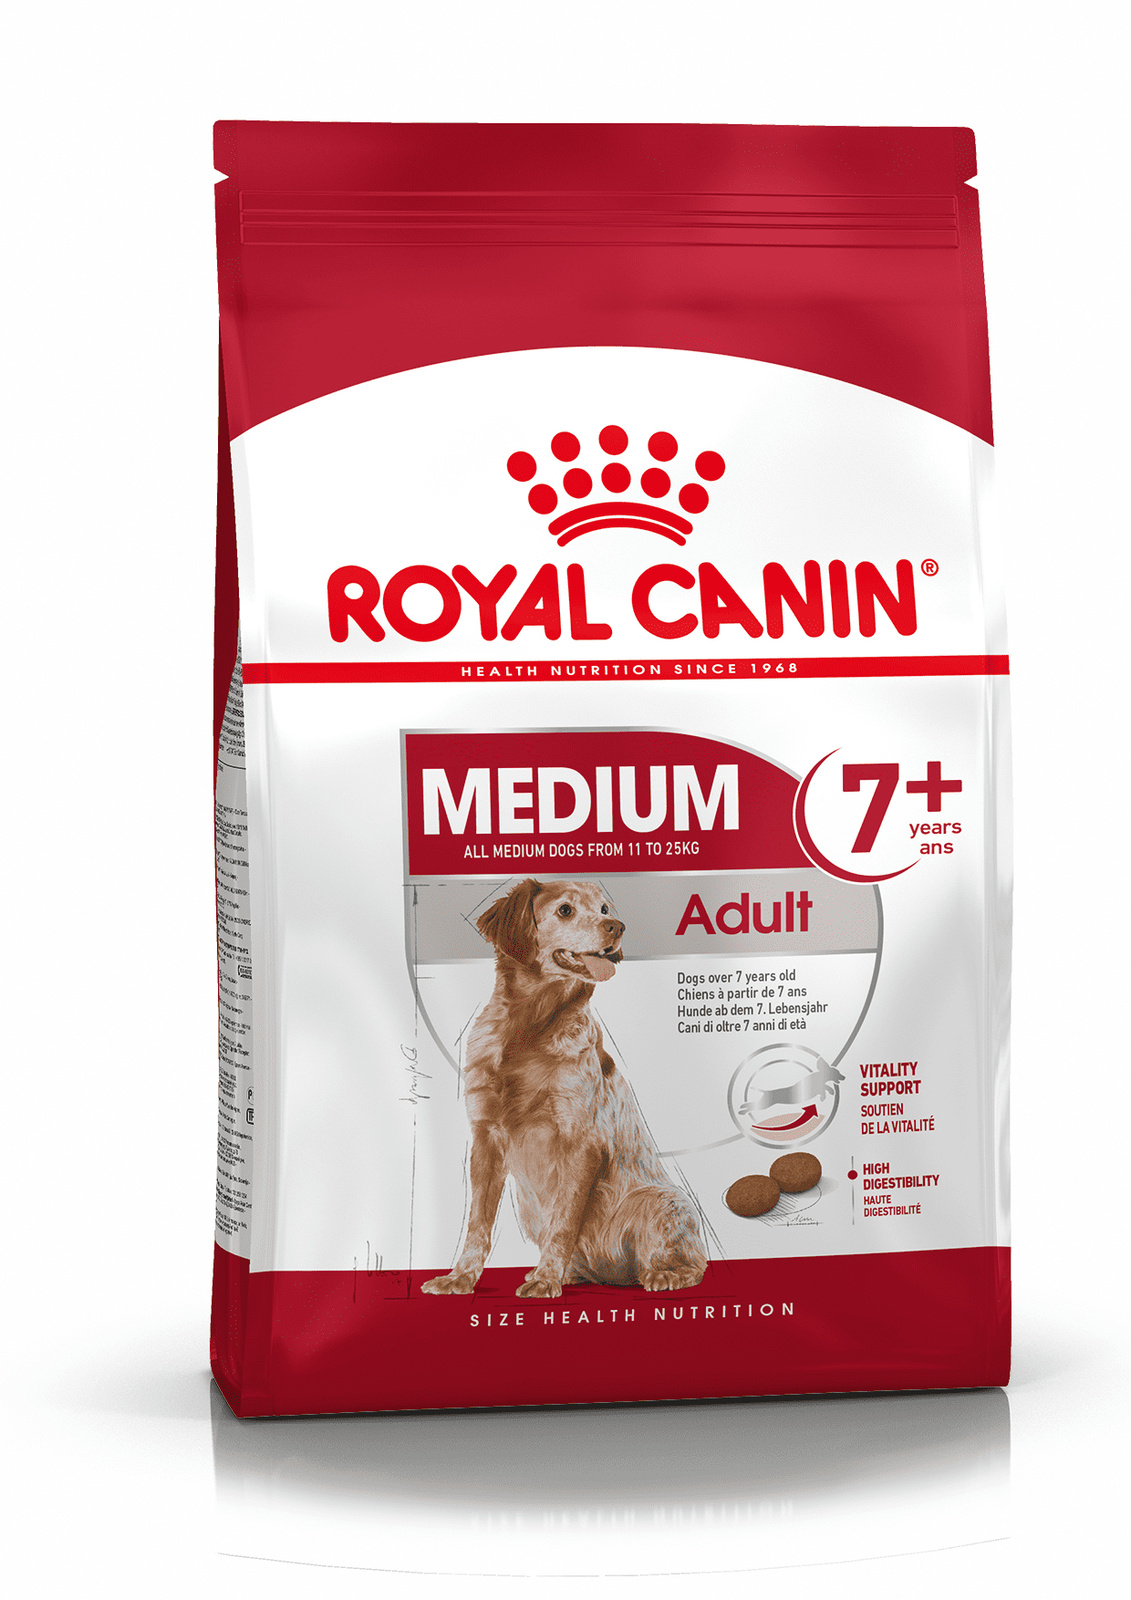 Корм Royal Canin корм для пожилых собак средних размеров: 11-25 кг, 7-10 лет (4 кг)